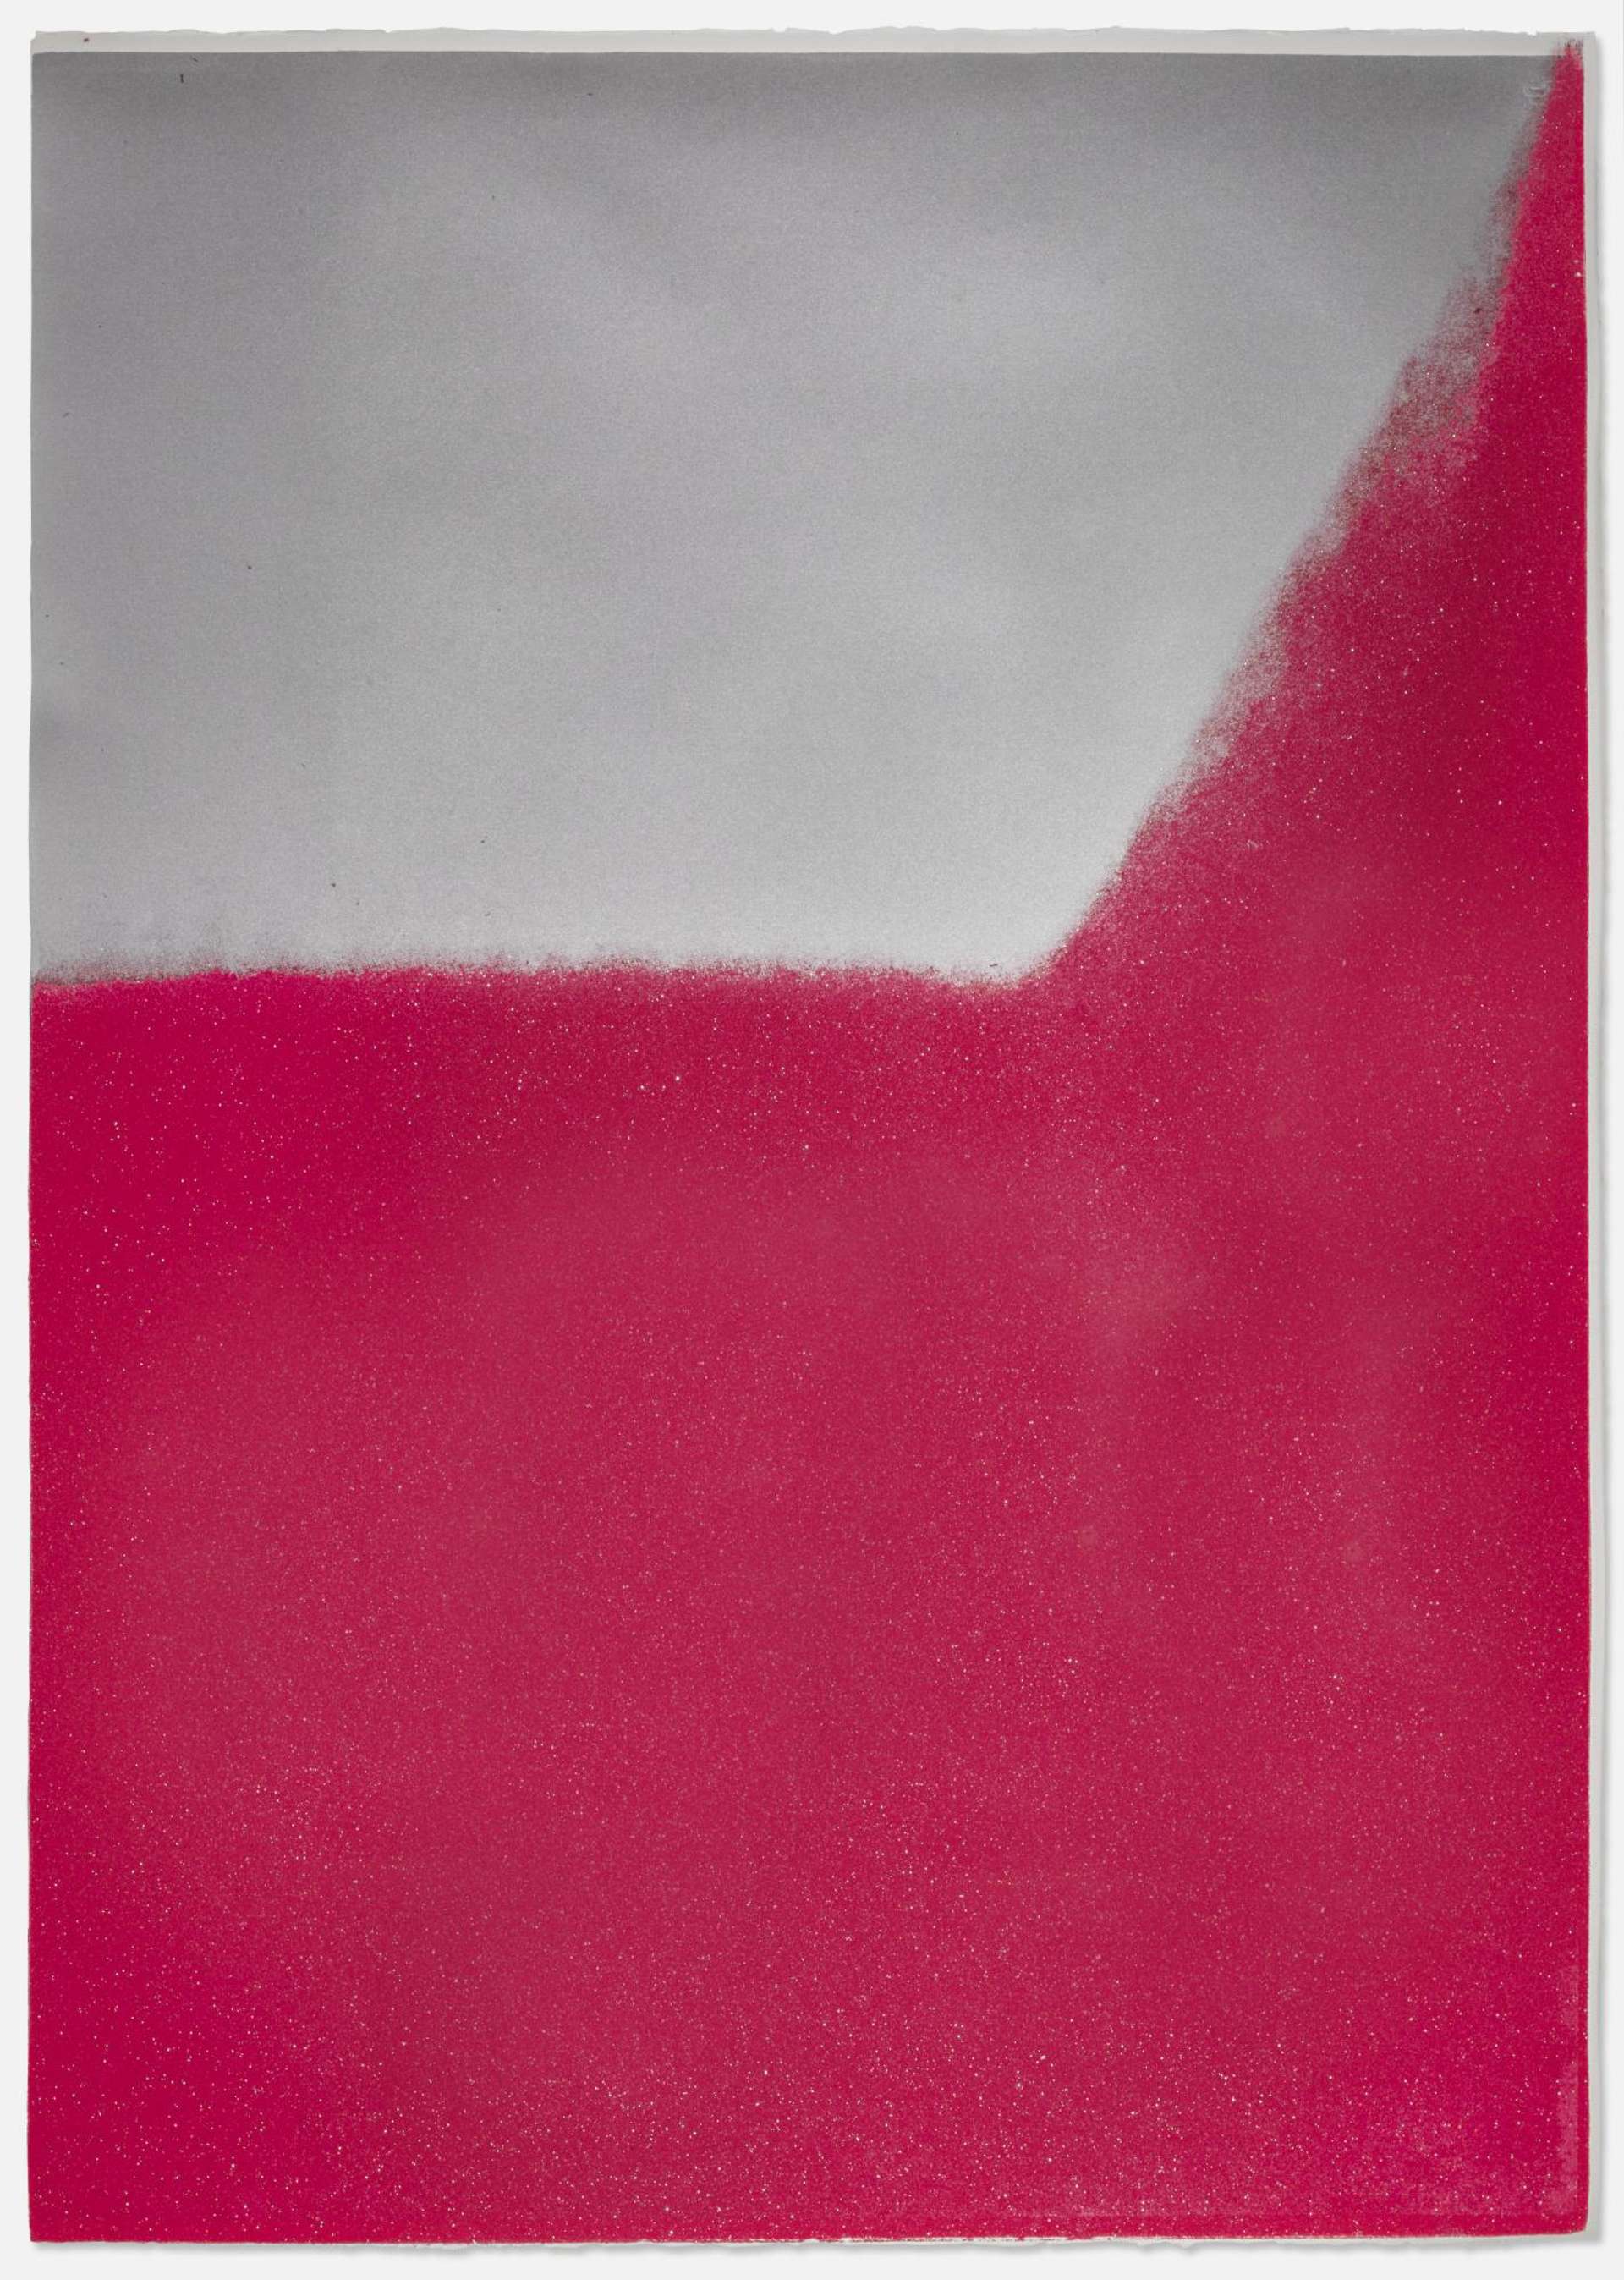 Andy Warhol: Shadows II (F. & S. II.214) - Signed Print